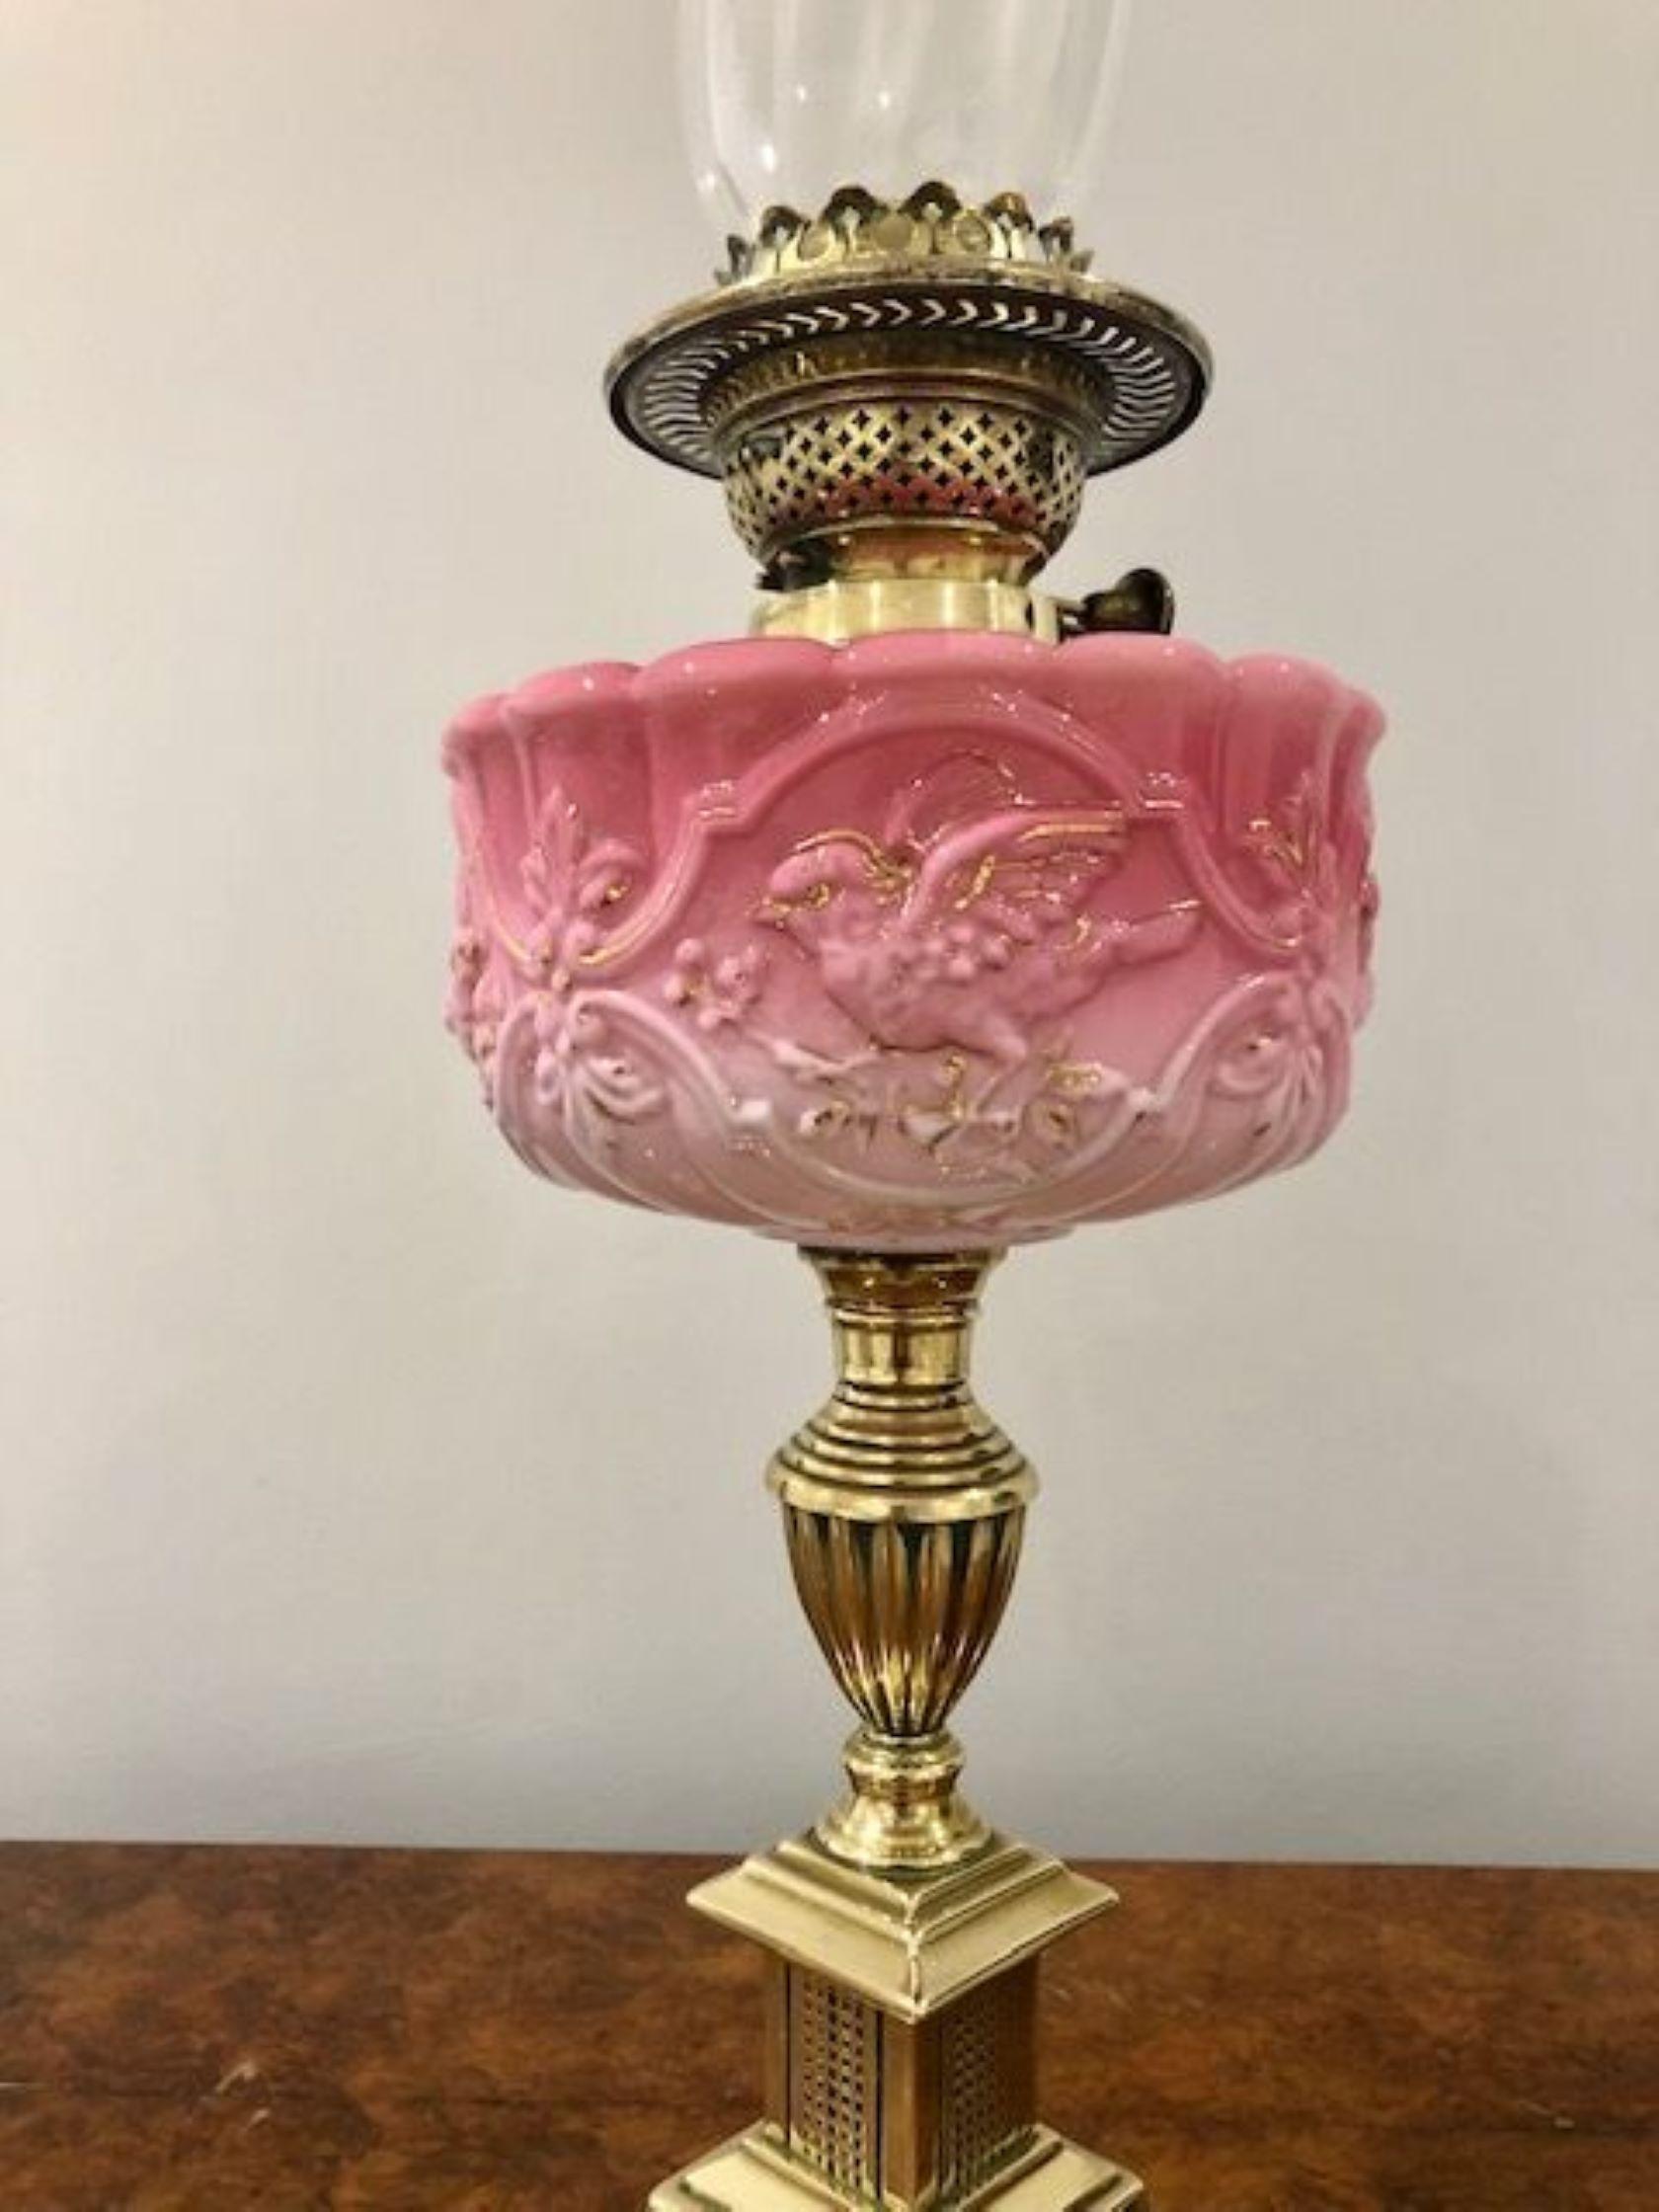 Superbe lampe à huile victorienne ancienne de qualité avec un abat-jour en verre décoré et une cheminée en verre avec un double brûleur en laiton, un joli réservoir en verre rose orné soutenu par une colonne tournée en laiton reposant sur une base